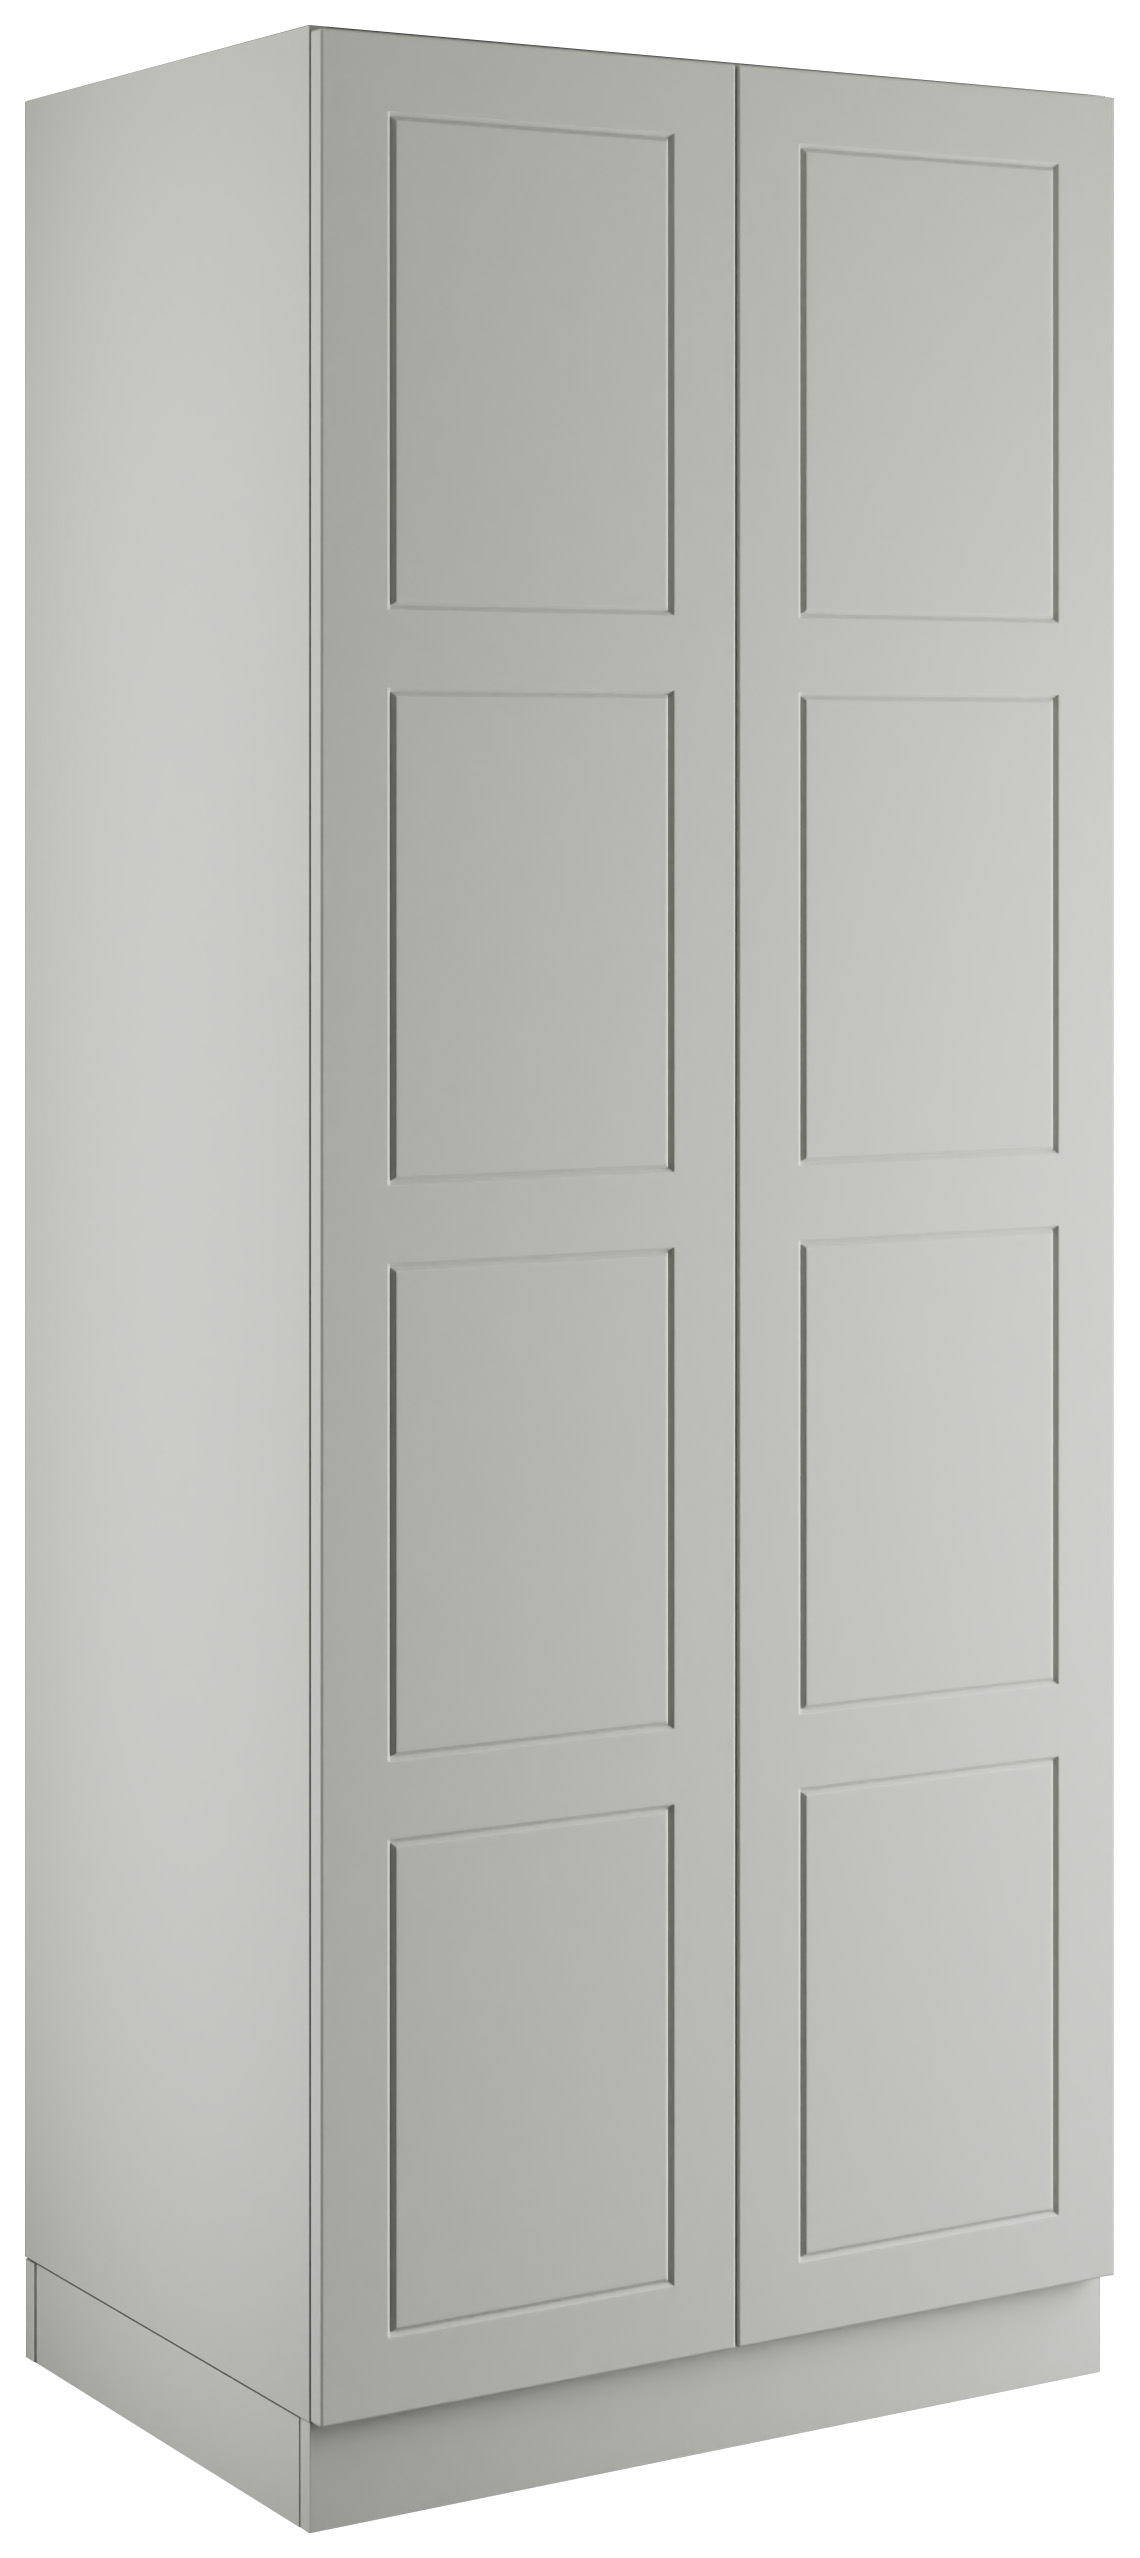 Bramham Light Grey Double Wardrobe with Single Rail - 900 x 2260 x 608mm